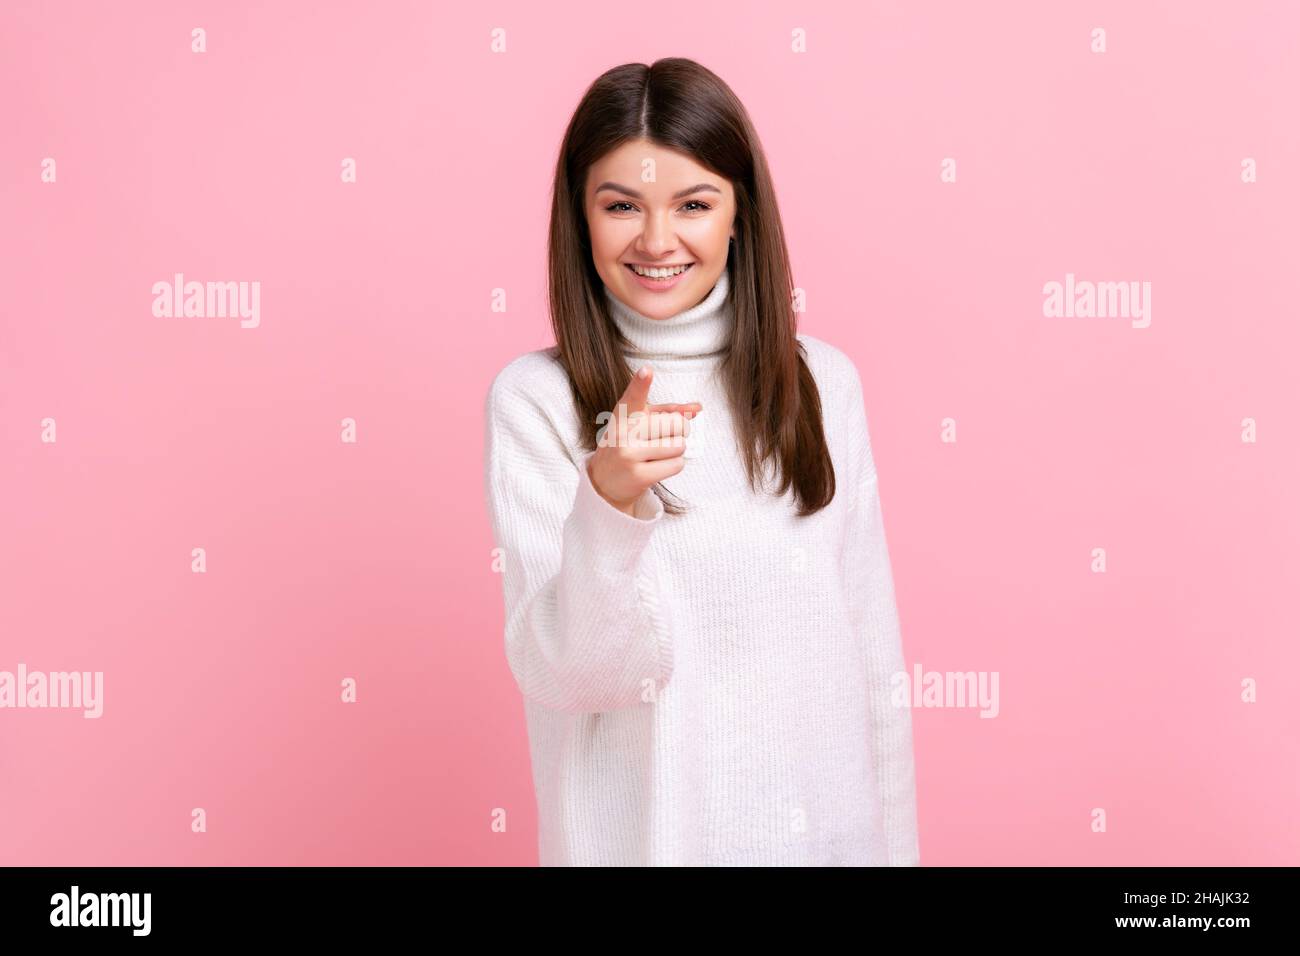 Glückliche positive Frau, die auf die Kamera zeigt, positive Emotionen zum Ausdruck bringt, Sie wählt, trägt weißen Pullover im lässigen Stil. Innenaufnahme des Studios isoliert auf rosa Hintergrund. Stockfoto